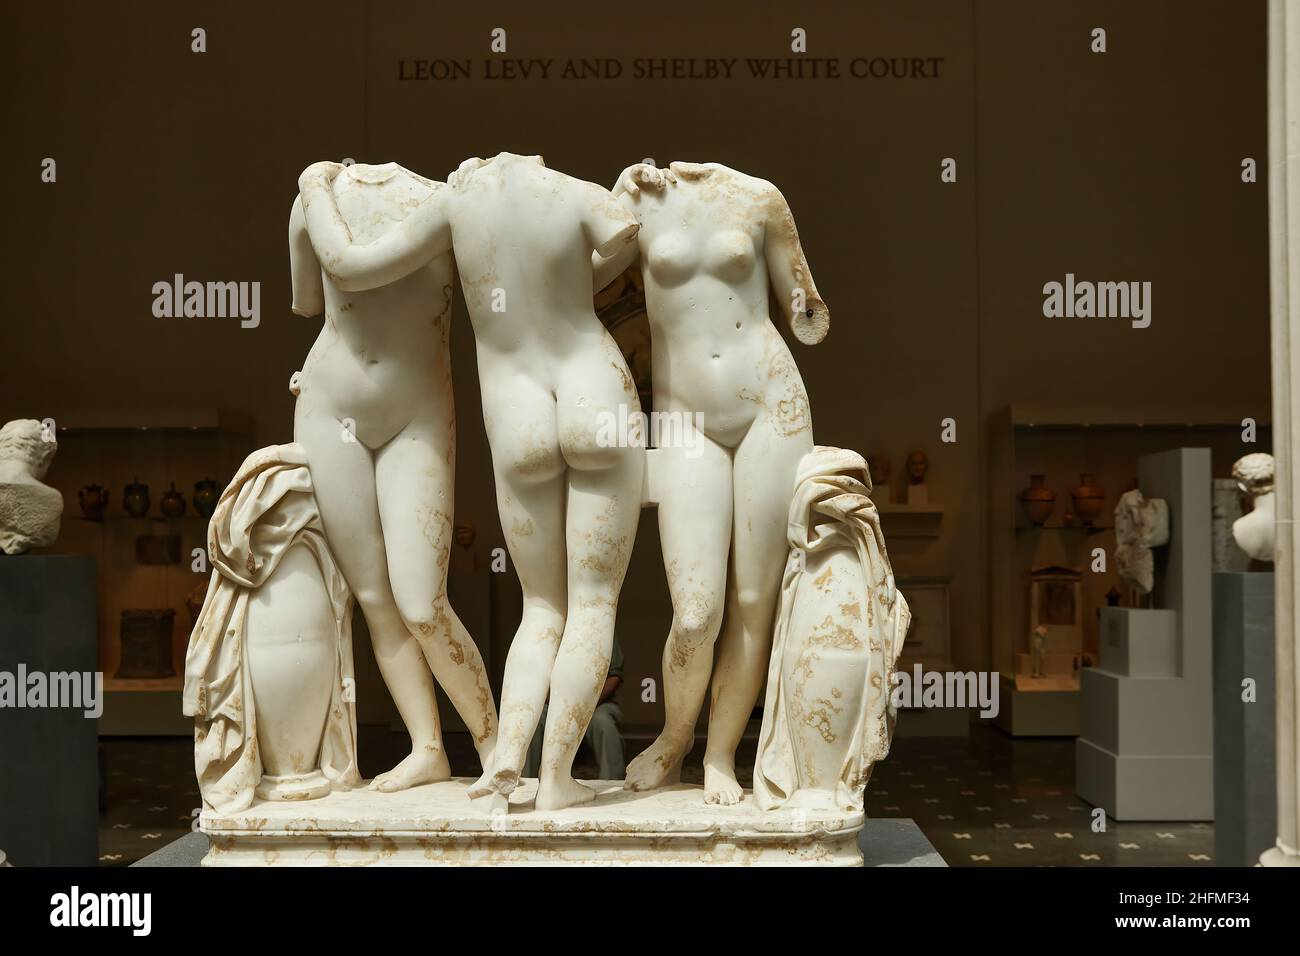 Leon Levy y Shelby White Court, la pieza central de las galerías romana y griega del Museo Metropolitano con las famosas Tres Gracias. Foto de stock